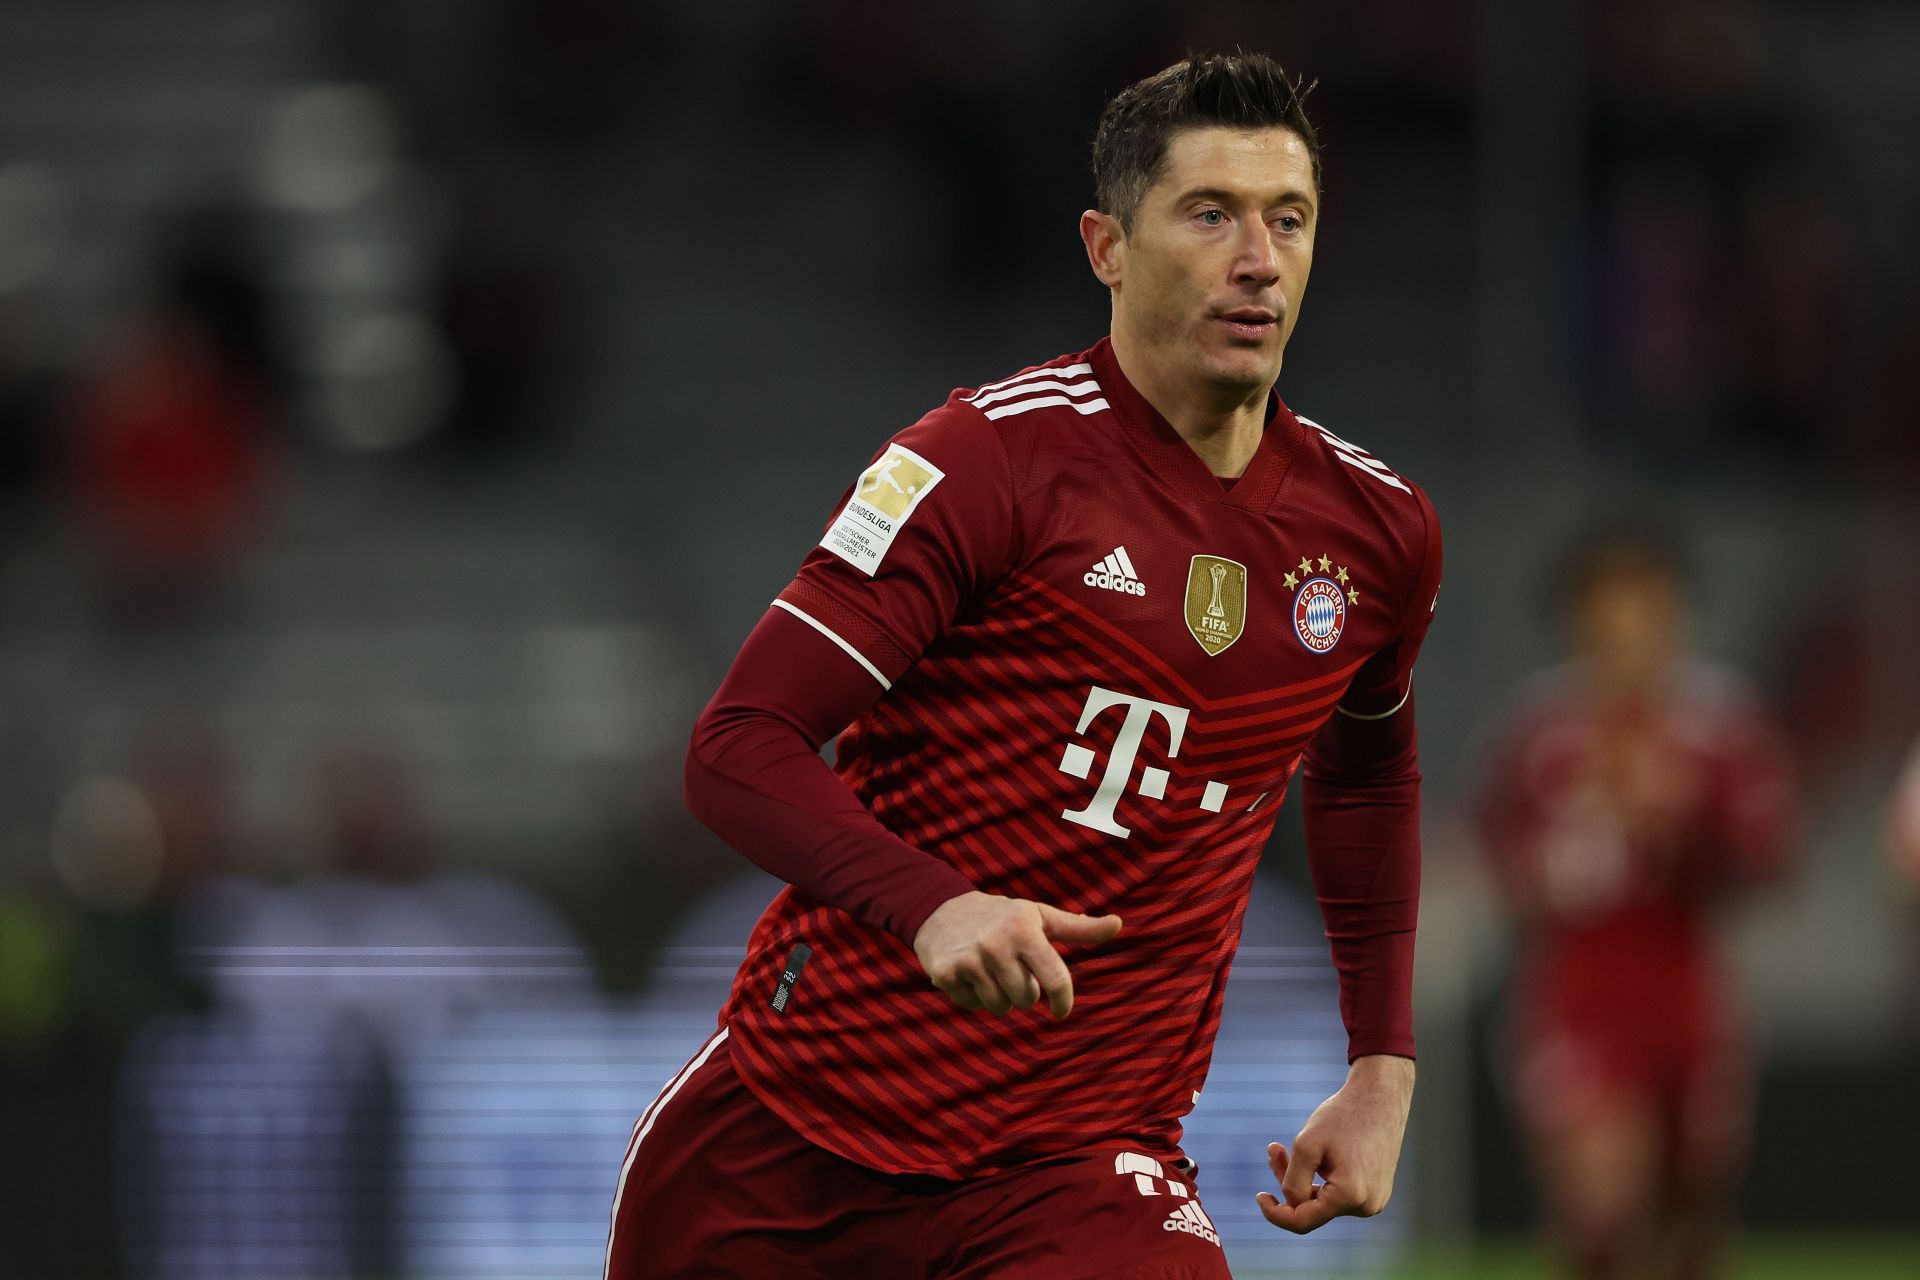 Robert Lewandowski has enjoyed a great goalscoring spell with Bayern Munich